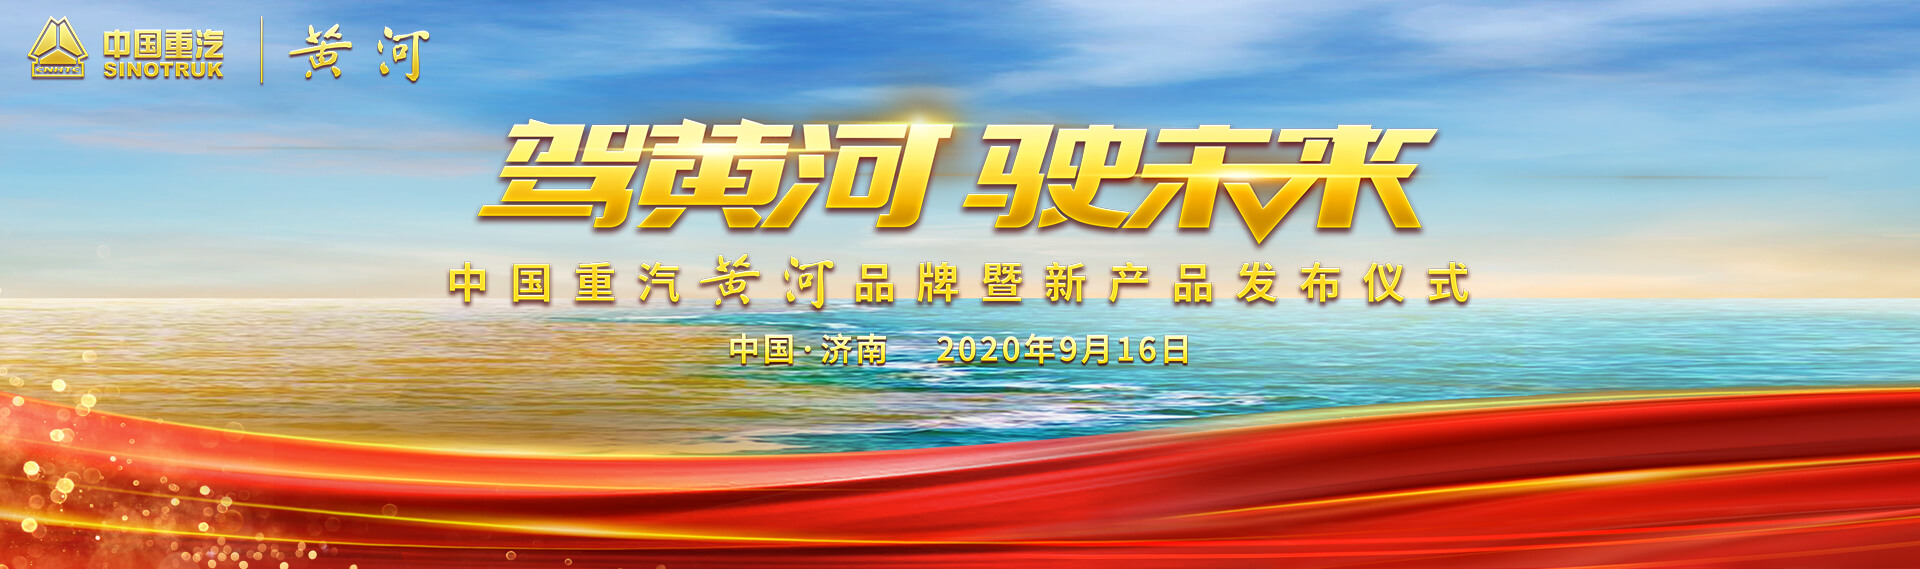 驾黄河驶未来—中国重汽黄河品牌暨新产品发布仪式